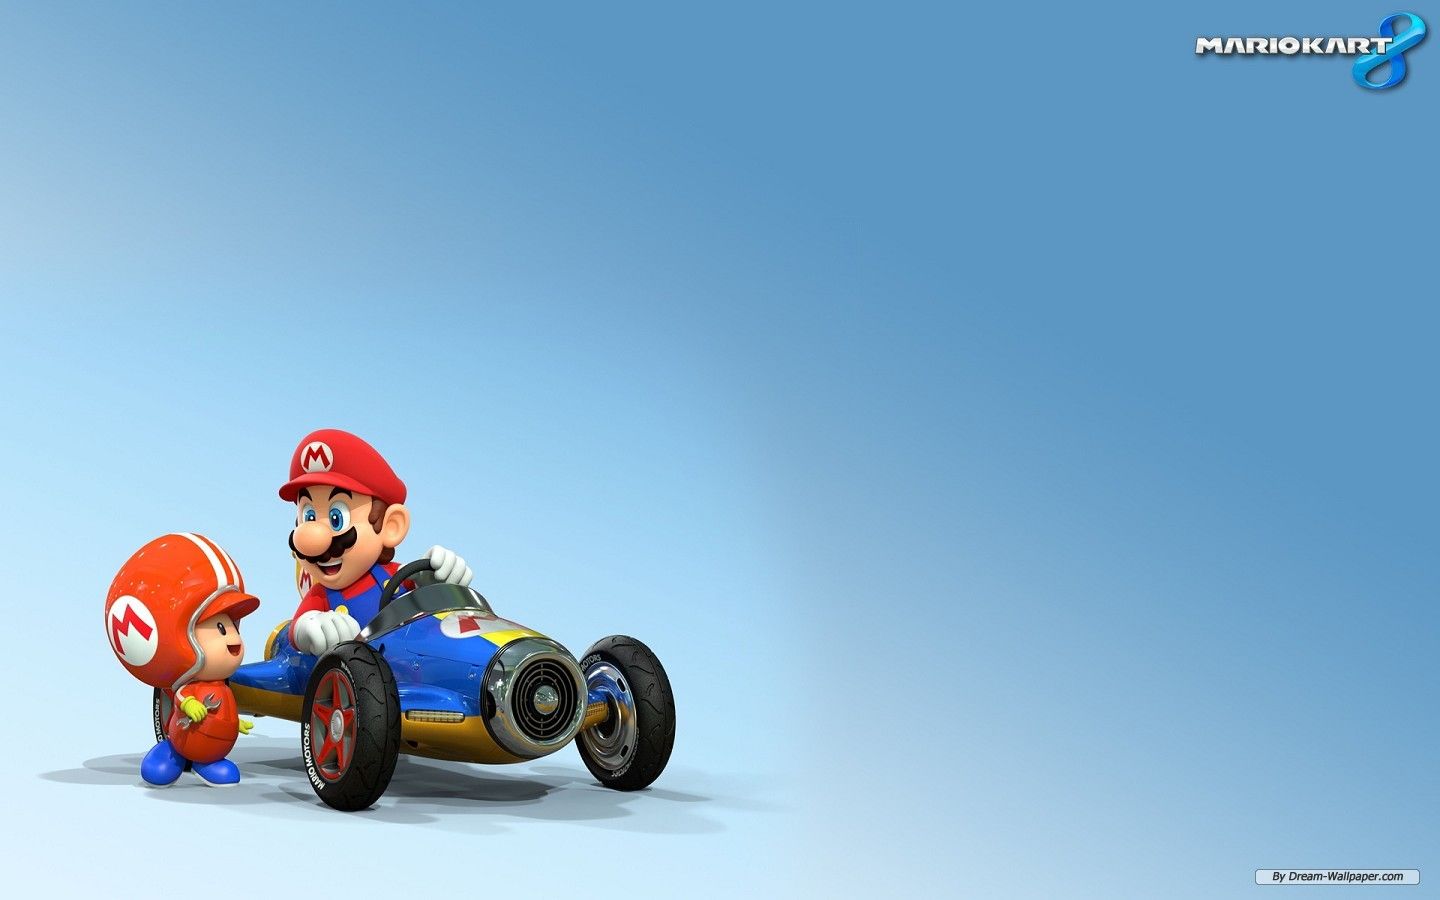 Free Wallpaper - Free Game wallpaper - Mario Kart 8 wallpaper ...